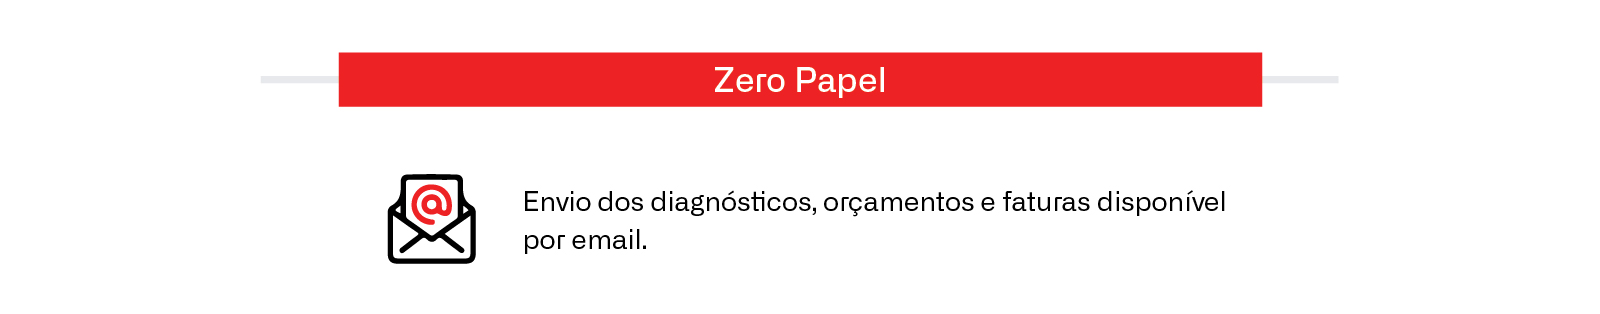 Zero papel